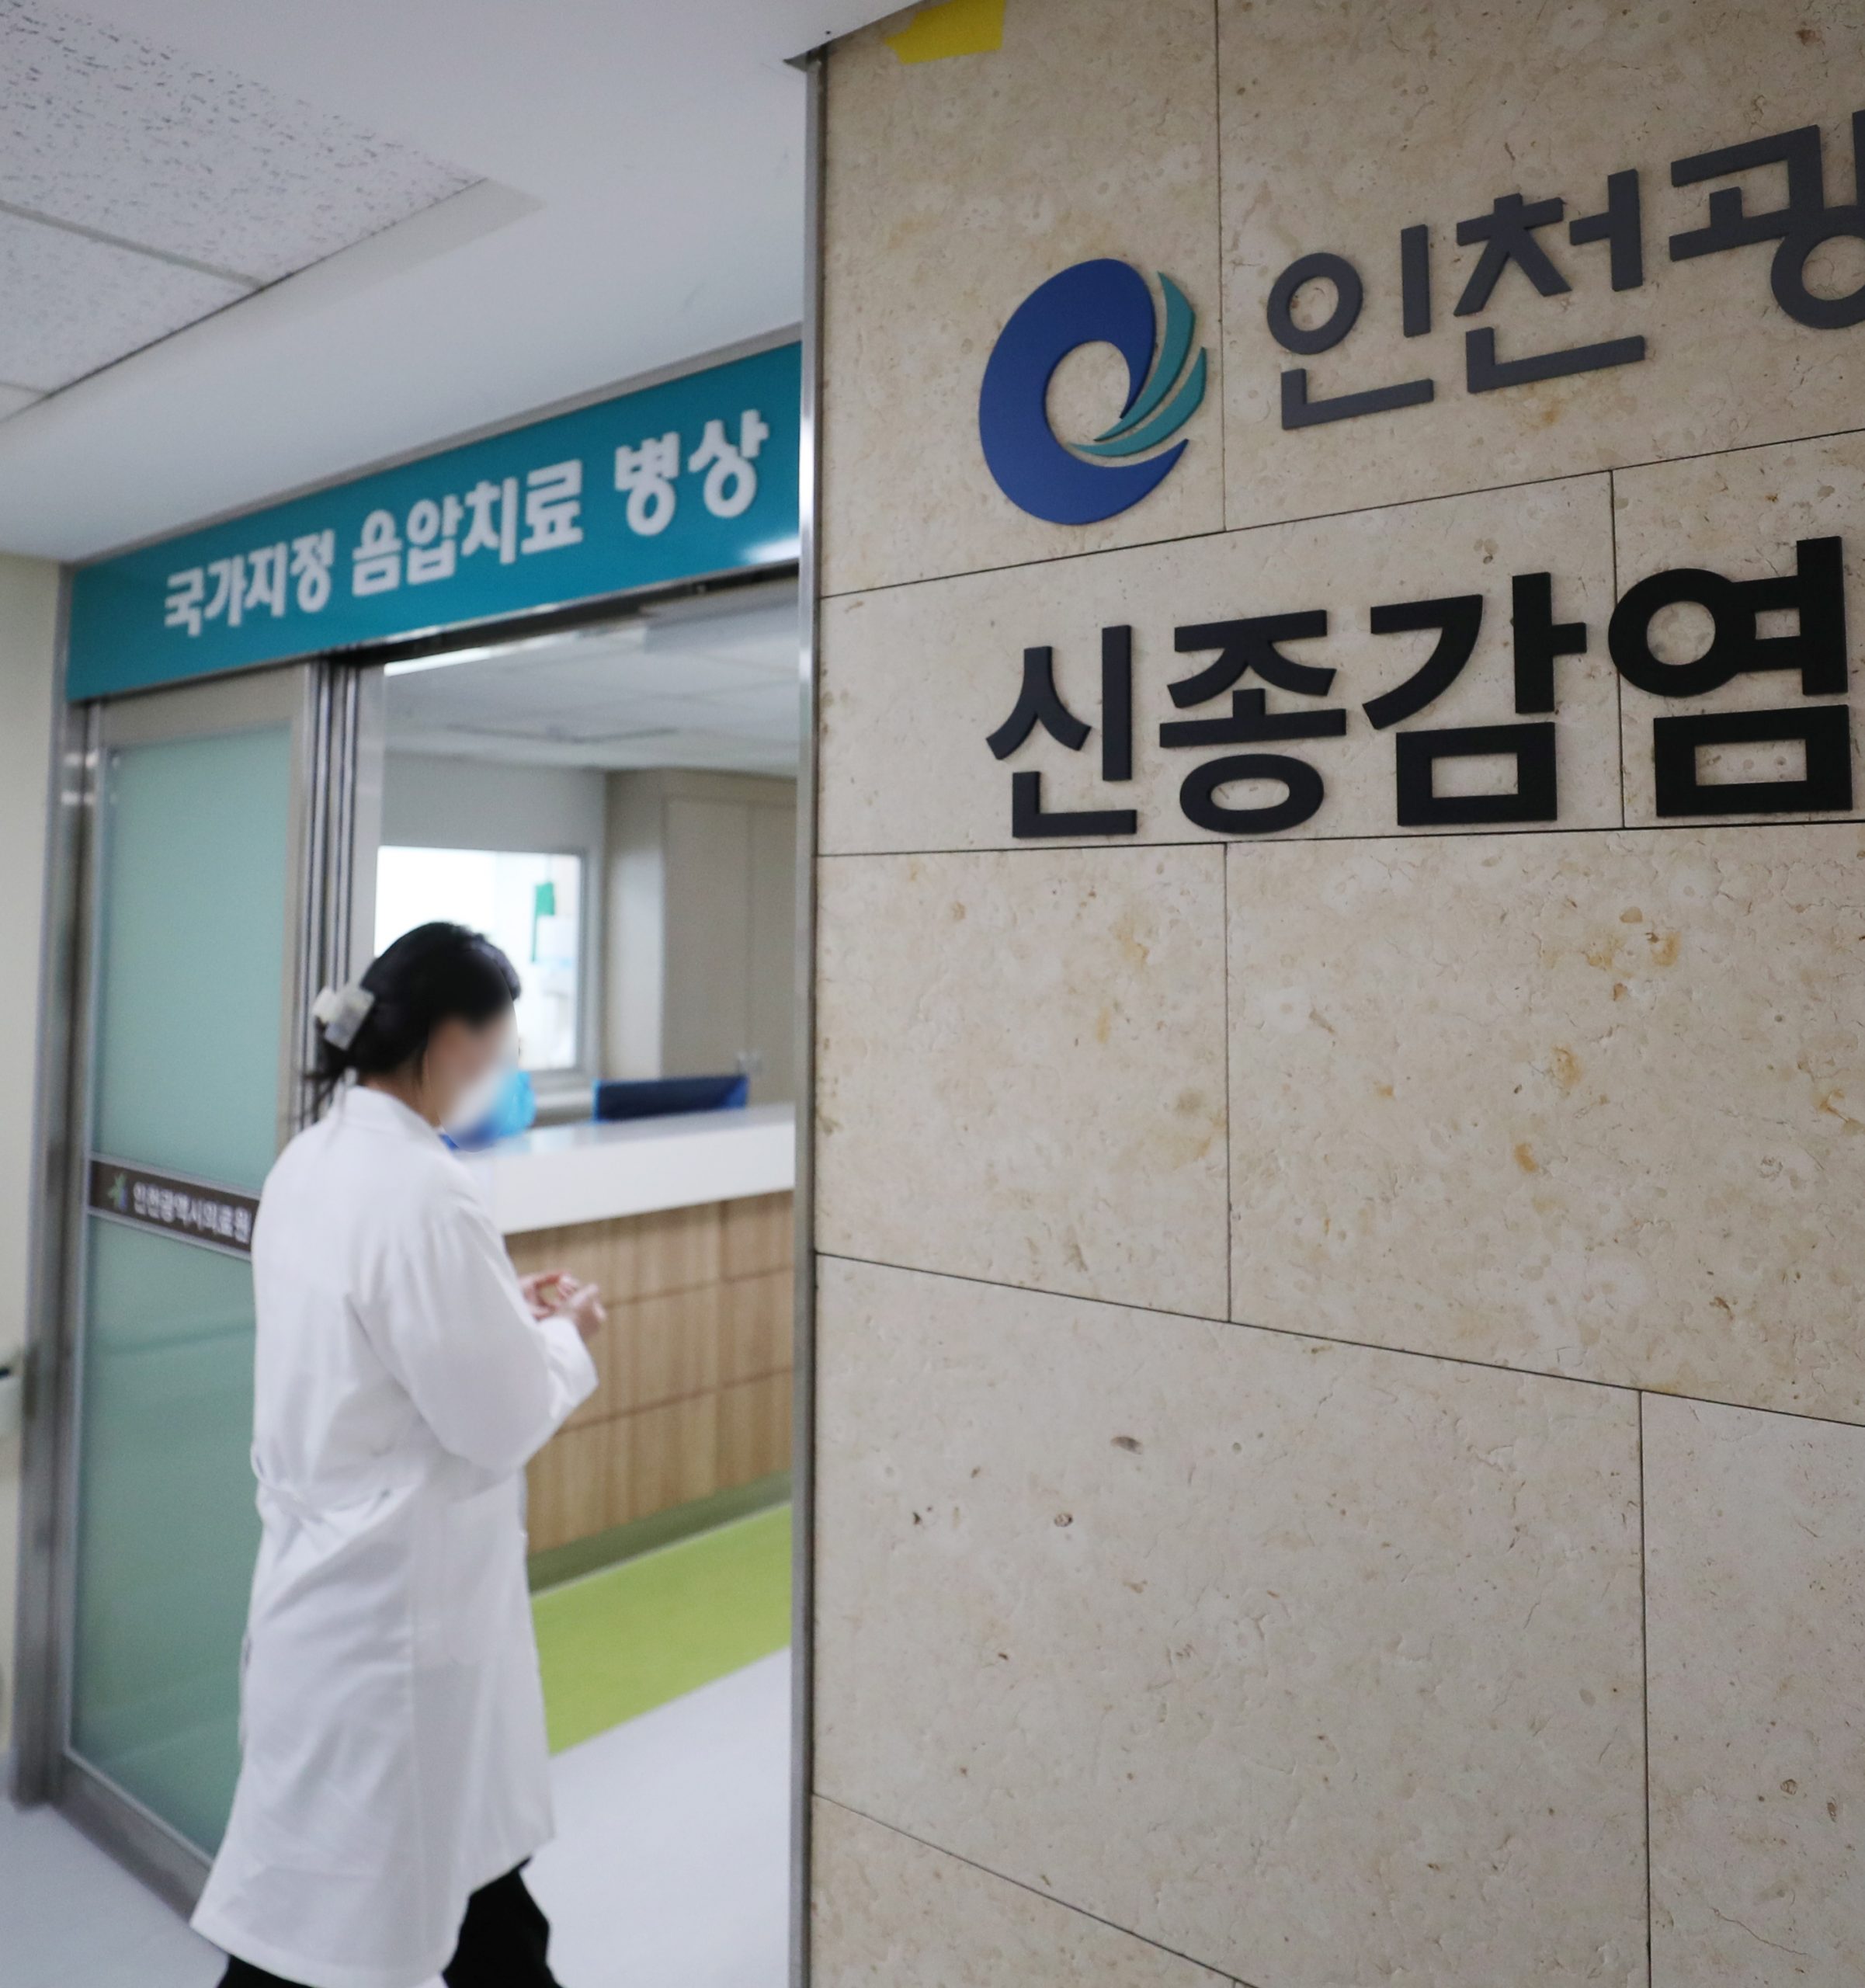 看世界 韩国报告第一起猴痘确诊病例 